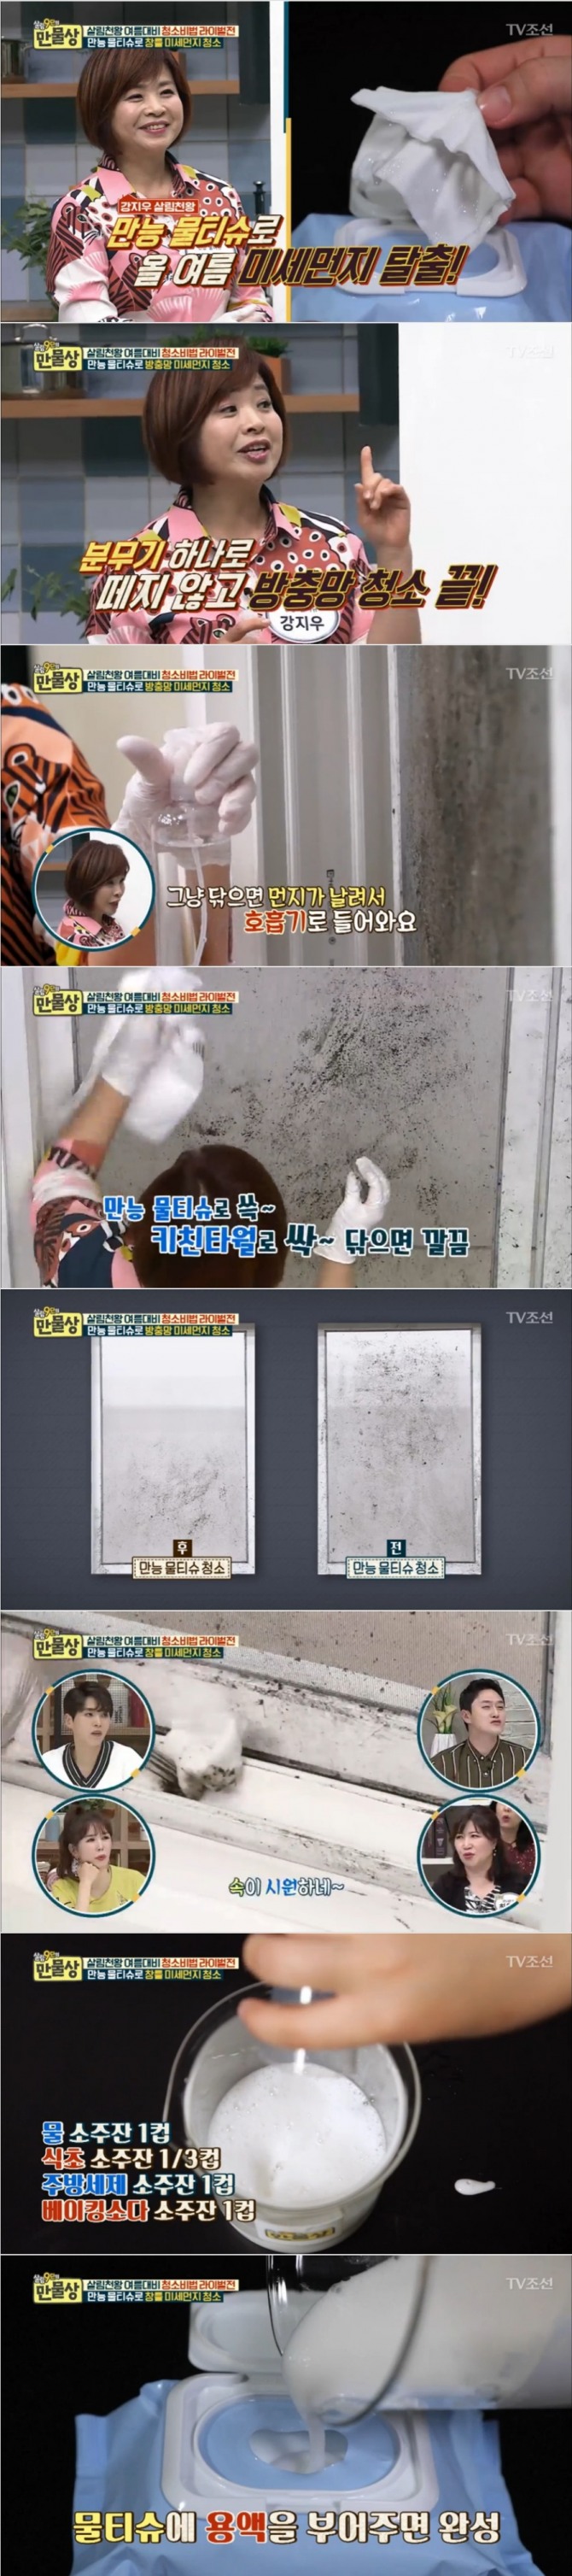 지난 7일 방송된 TV조선 '살림9단의 만물상' 247회에서는 강지우씨가 출연, 만능물티슈로 방충망 미세먼지를 간단하게 청소하는 꿀팁을 선보였다. 사진=TV조선 방송 캡처 